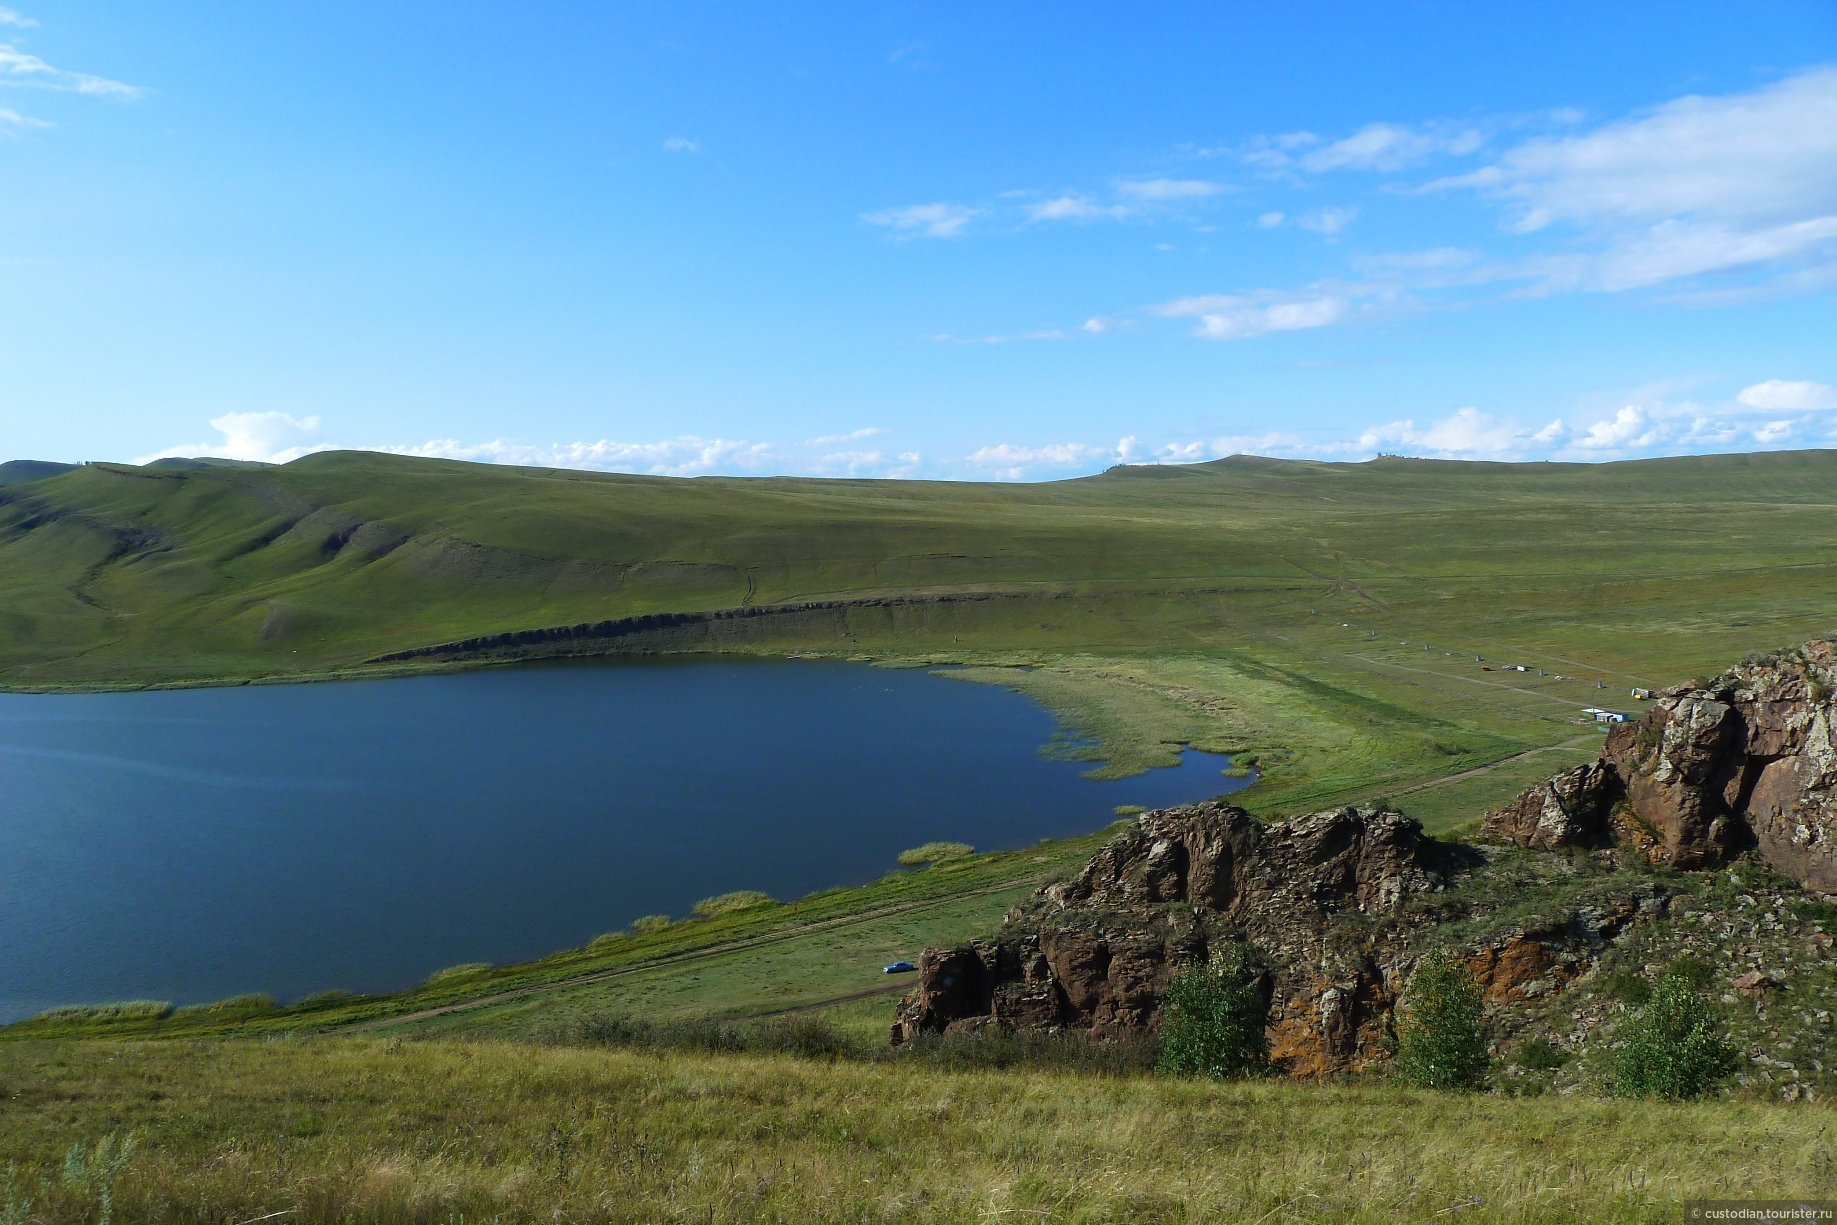 Озеро Кашколь Шарыповский район